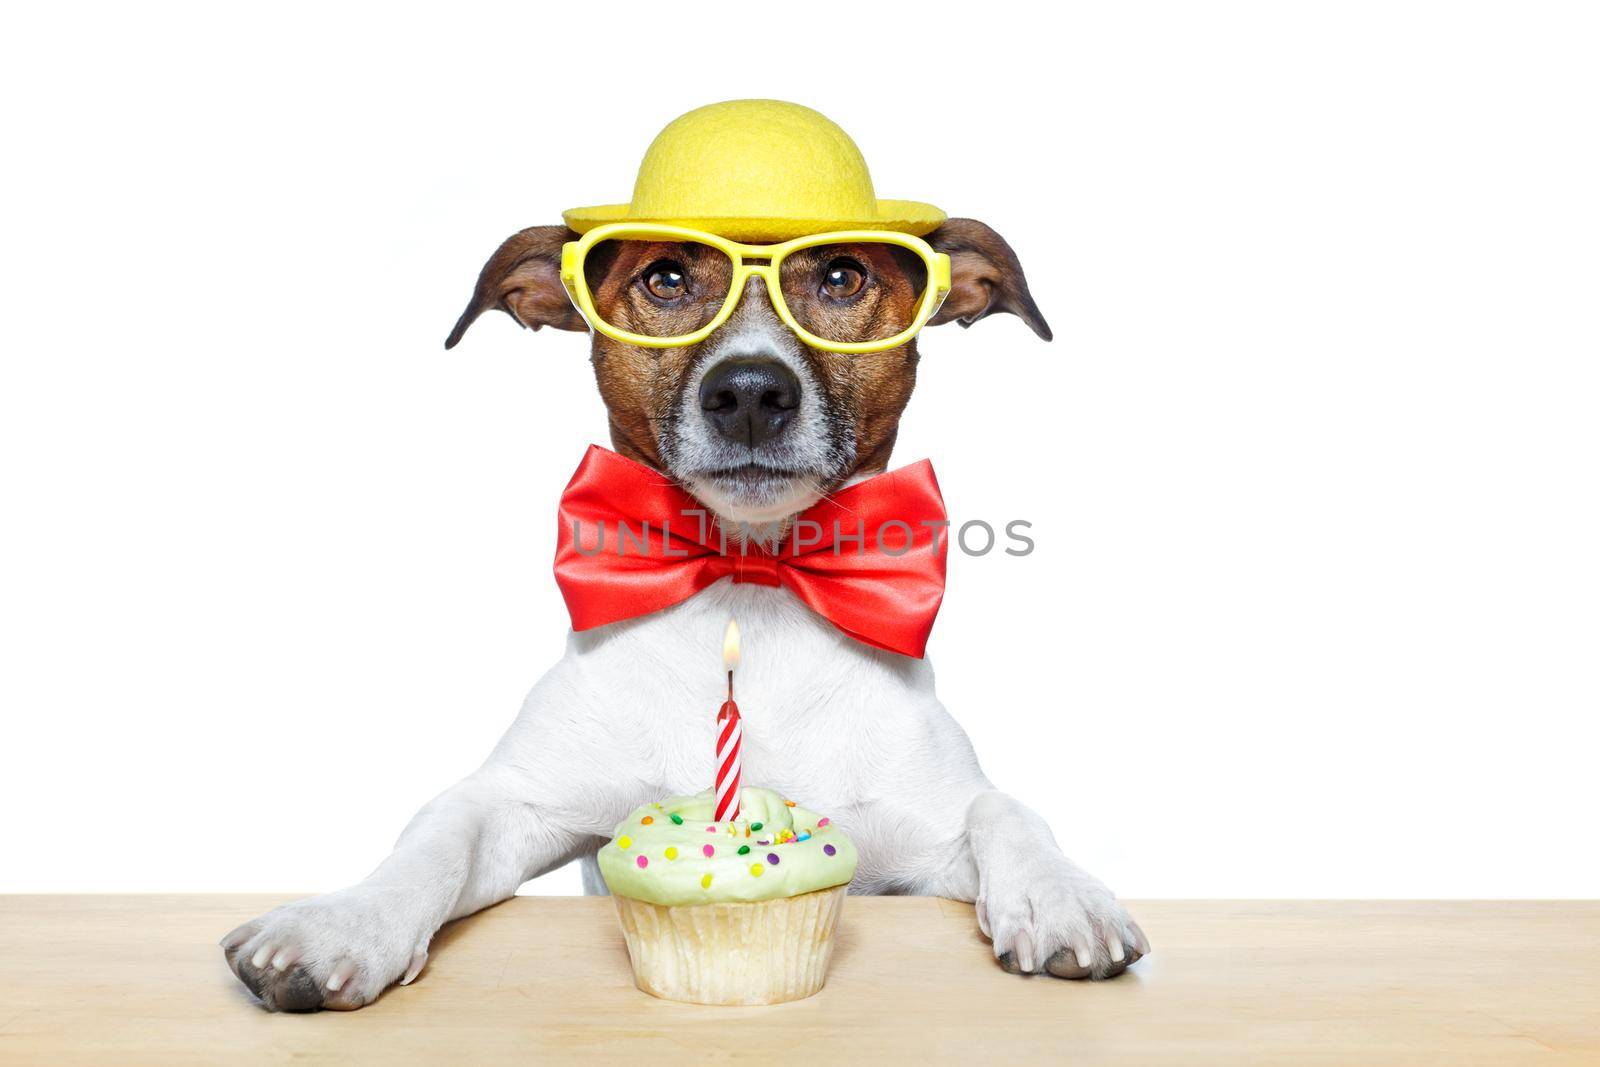 birthday dog cupcake by Brosch